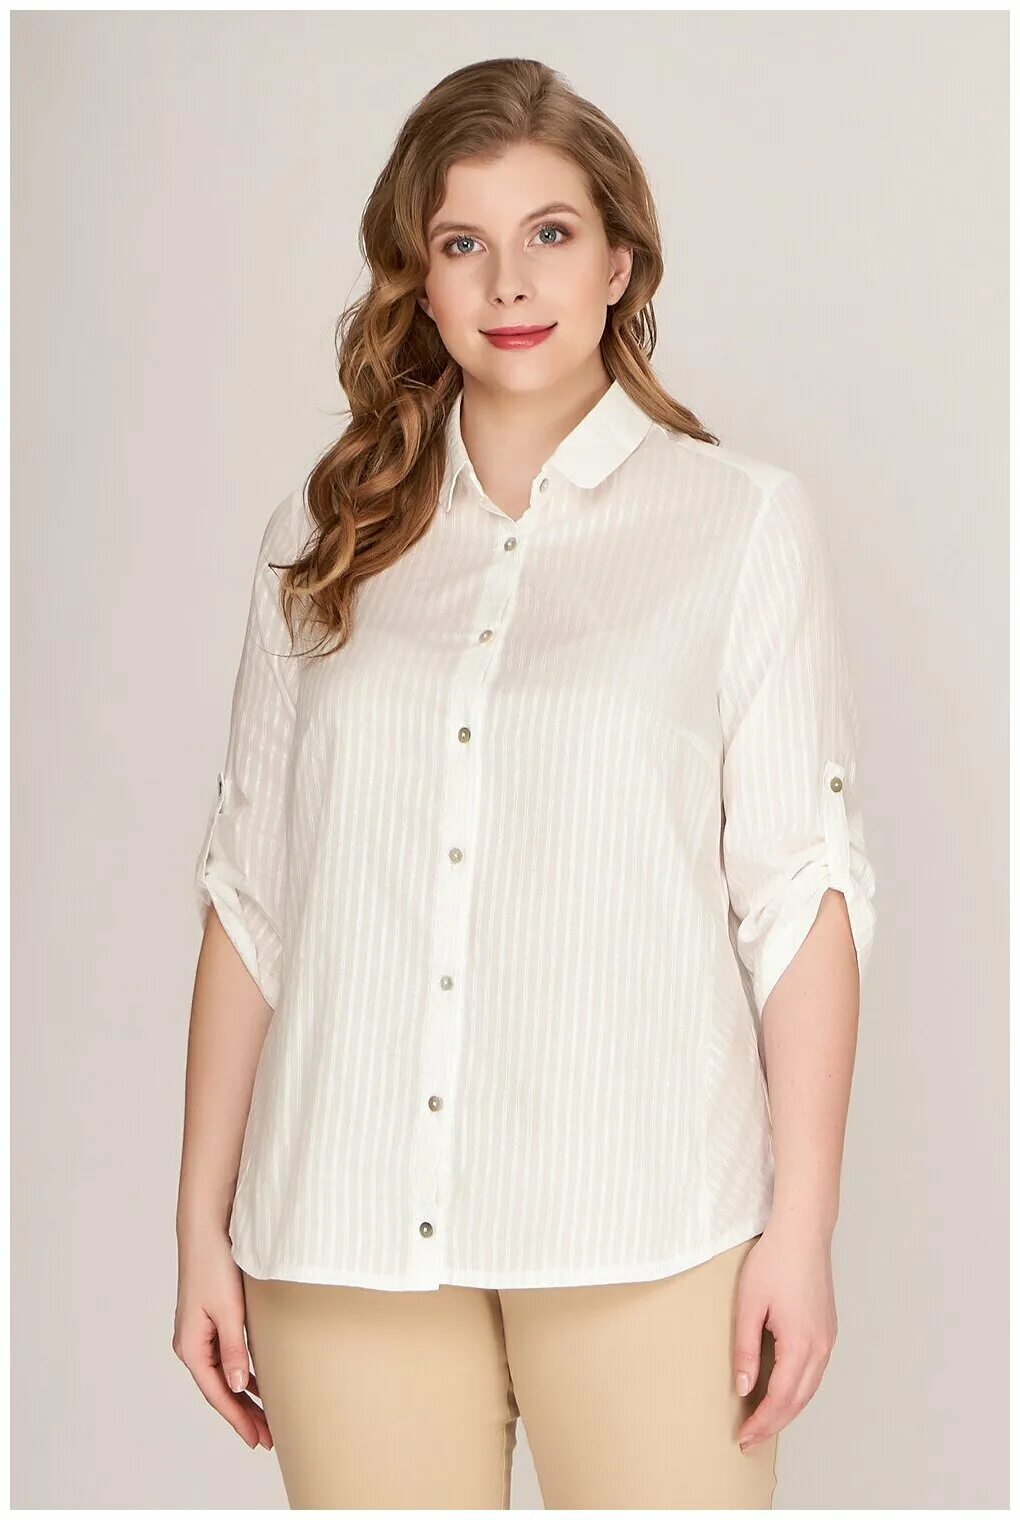 Белая блузка на валберис. Блуза 41255 Lina. Женщина в блузке. Белые блузки для полных. Блузки для полных женщин.